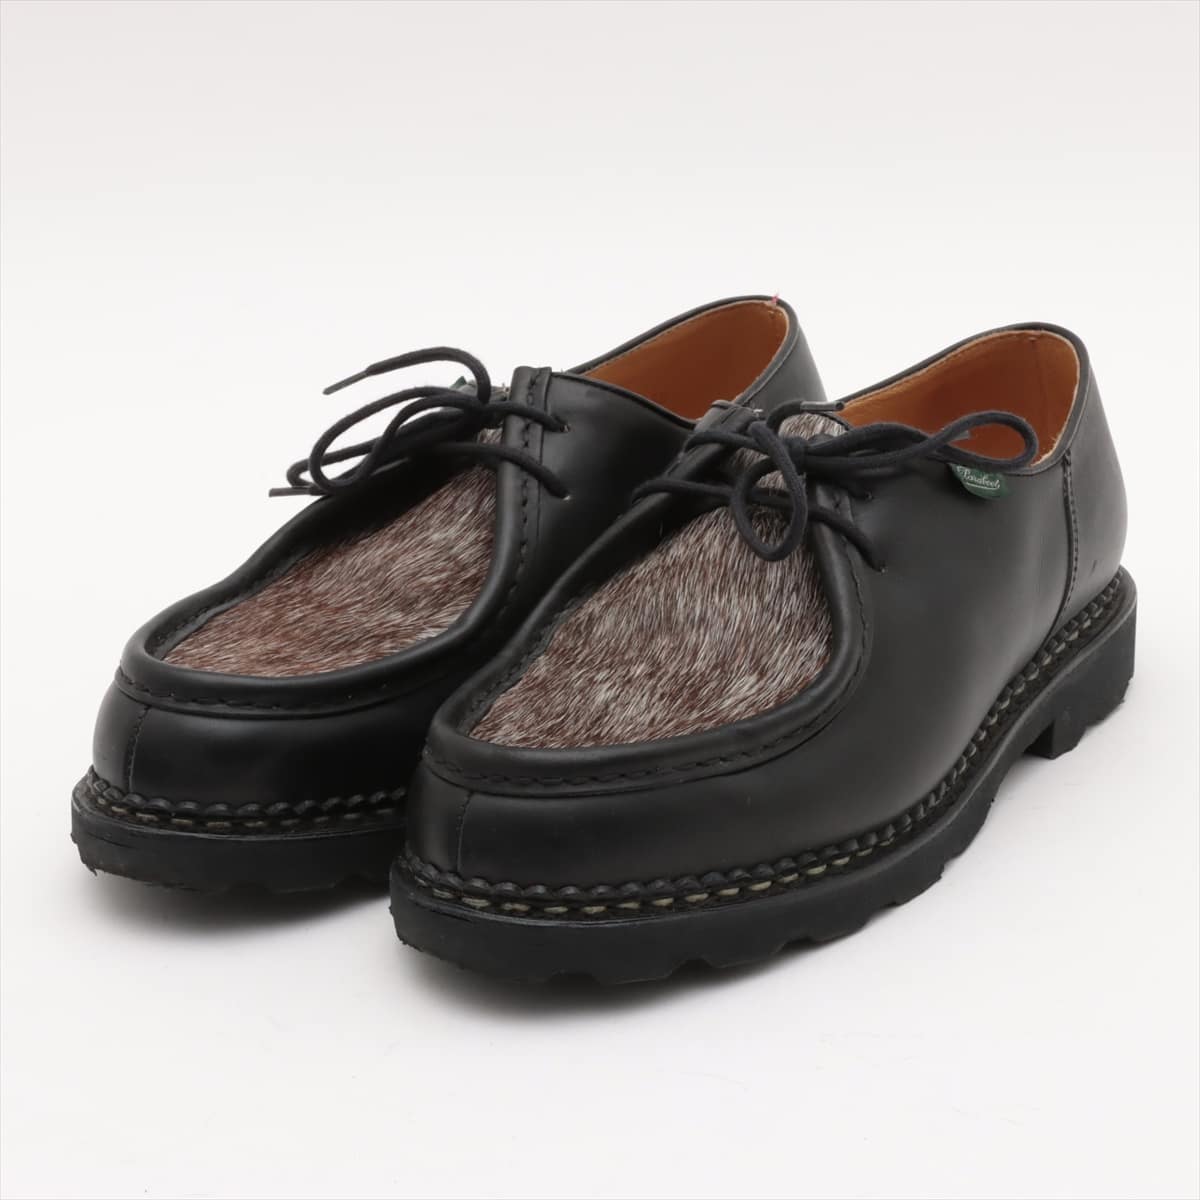 Paraboot Michaël Leather & unborn calf Leather shoes 43 1/2 Men's Black 715721 Tyrolean shoes